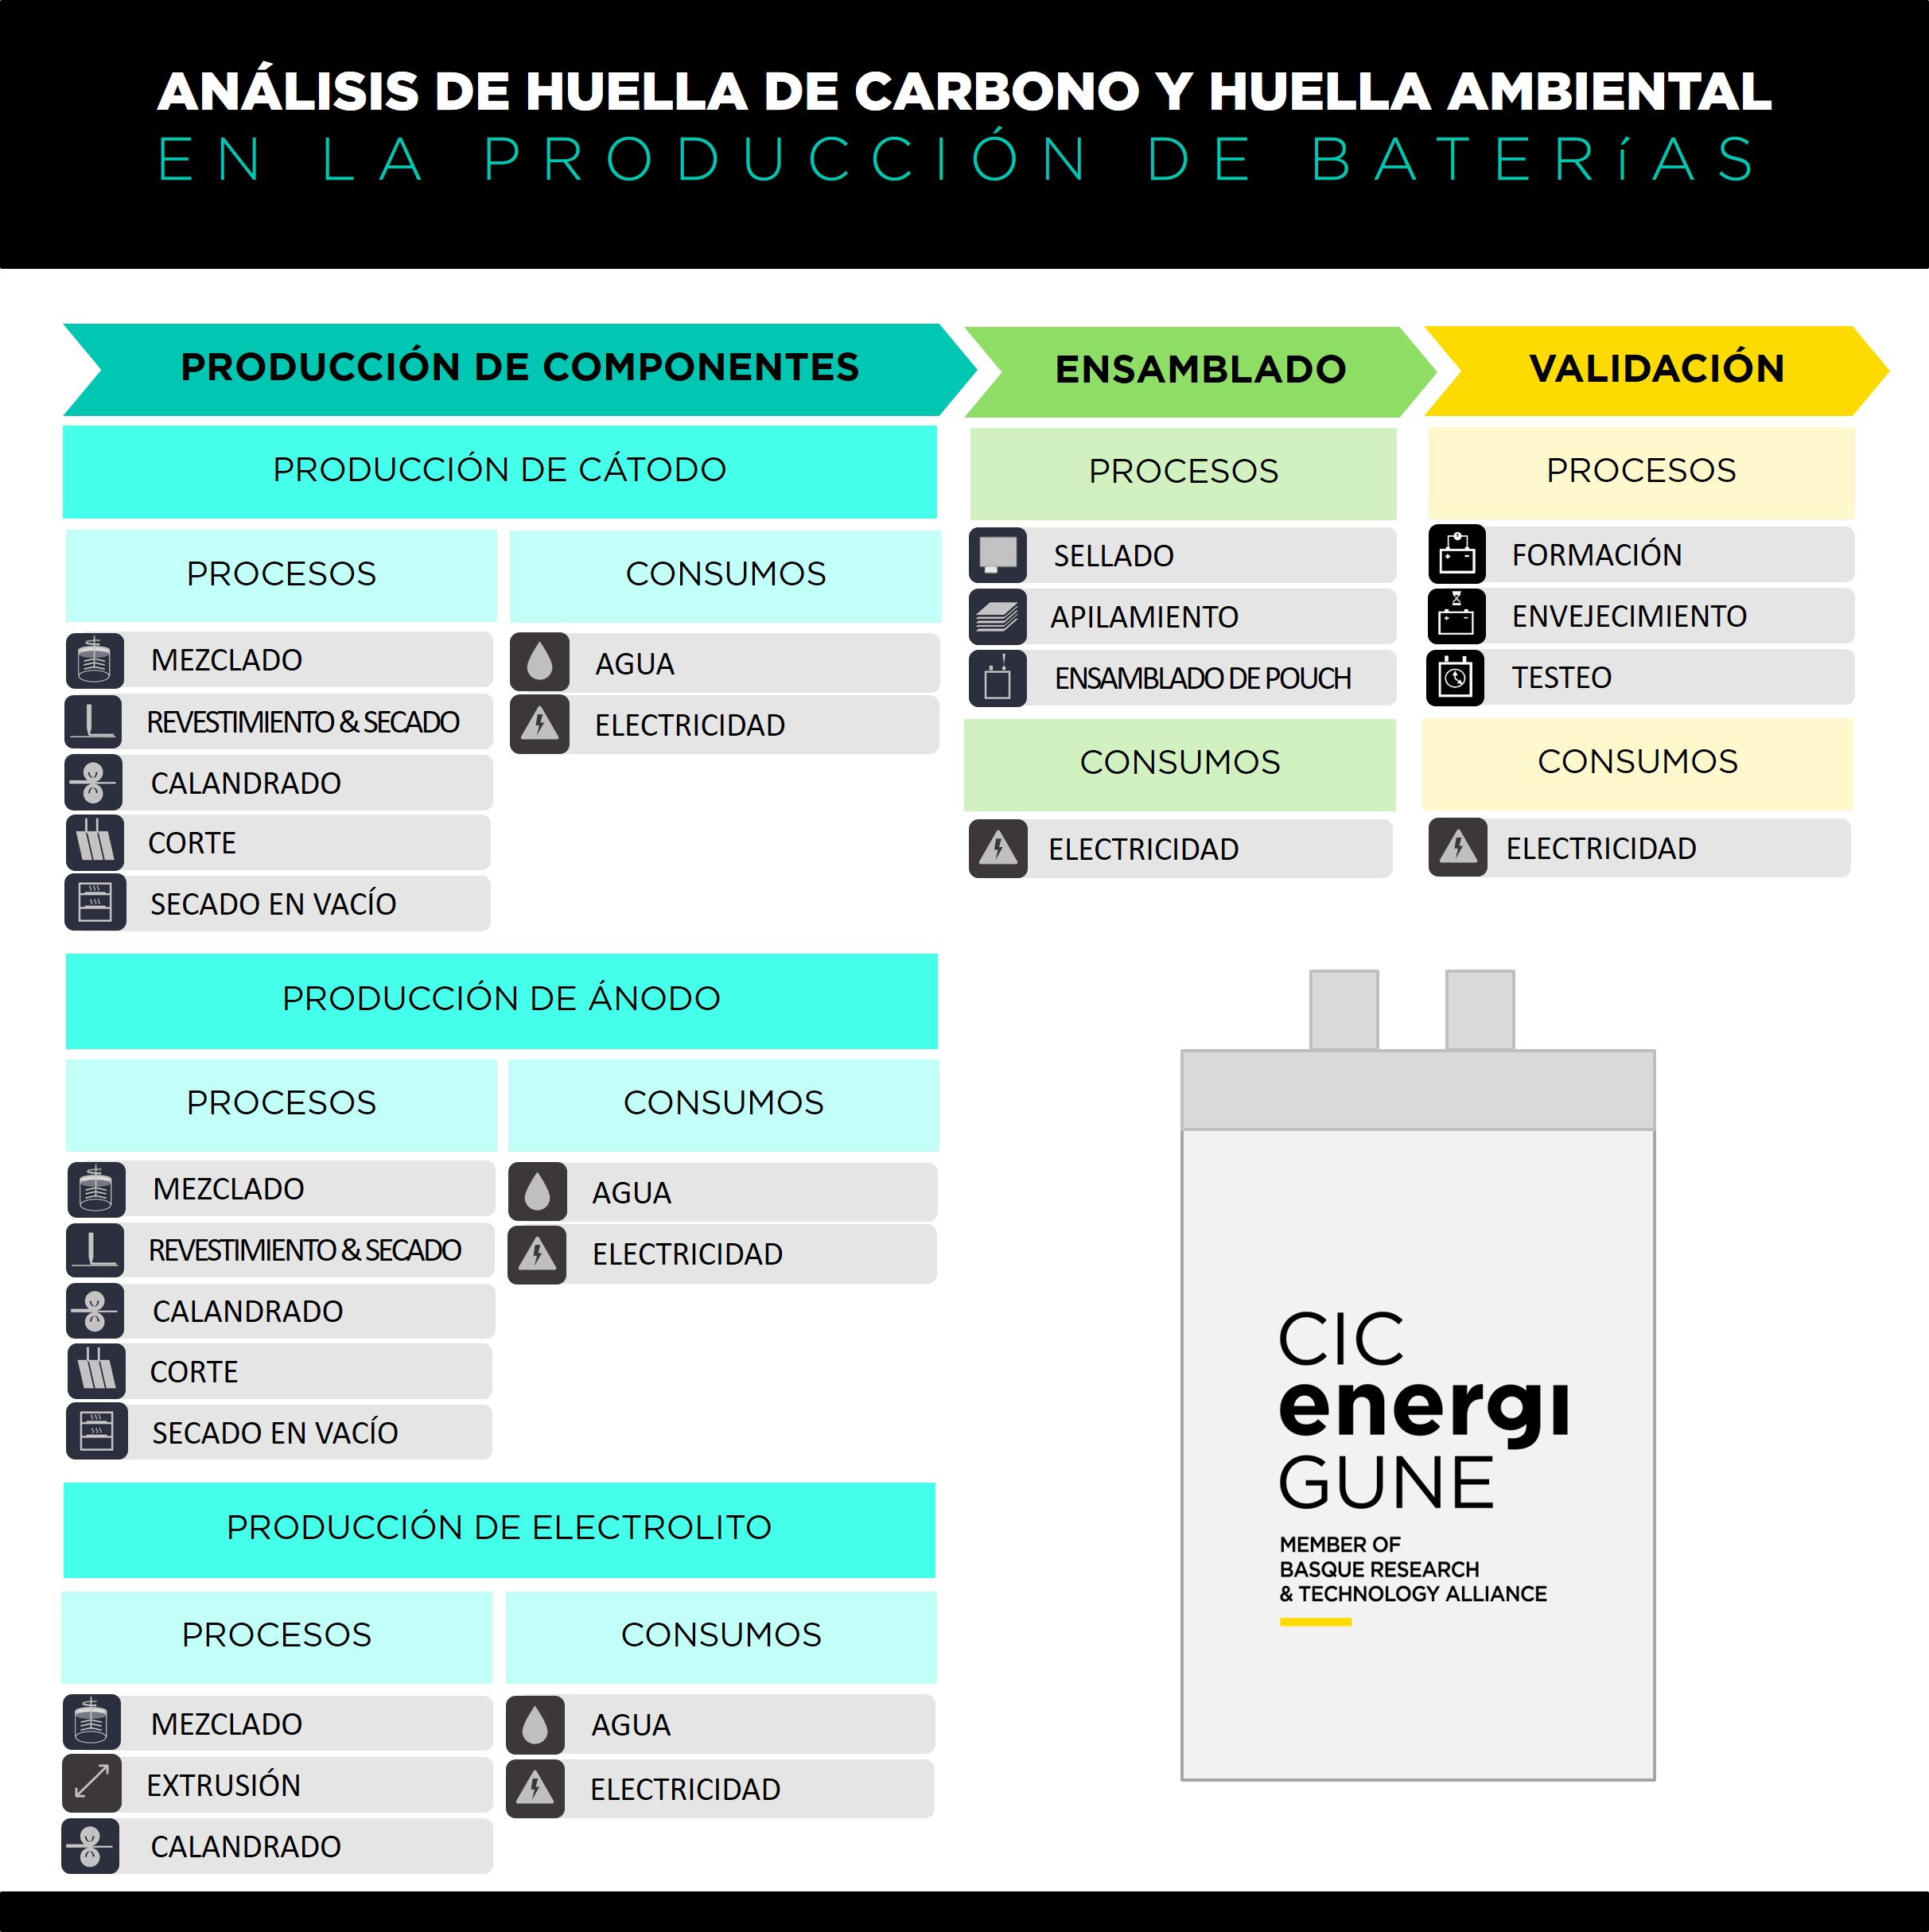 Análisis de huella de carbono y huella ambiental en la producción de baterías. Este gráfico revela las diferentes etapas que conforman desde la producción de componentes (cátodo, ánodo y electrolito), hasta el ensamblado y la validación en CIC energiGUNE.